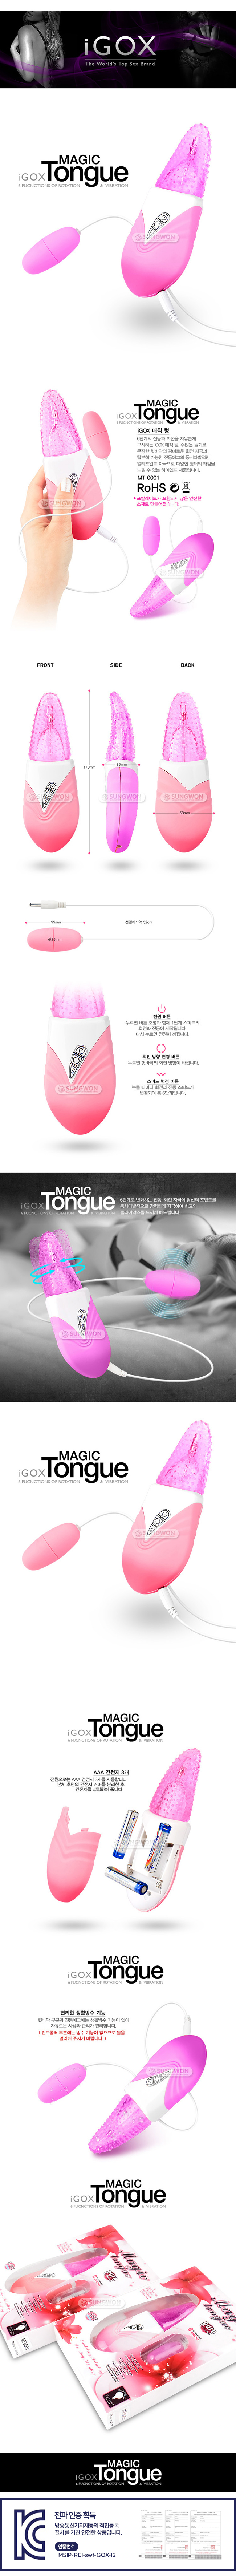 [20단 진동] iGOX 매직 텅(iGOX Magic Tongue) - GOX-96